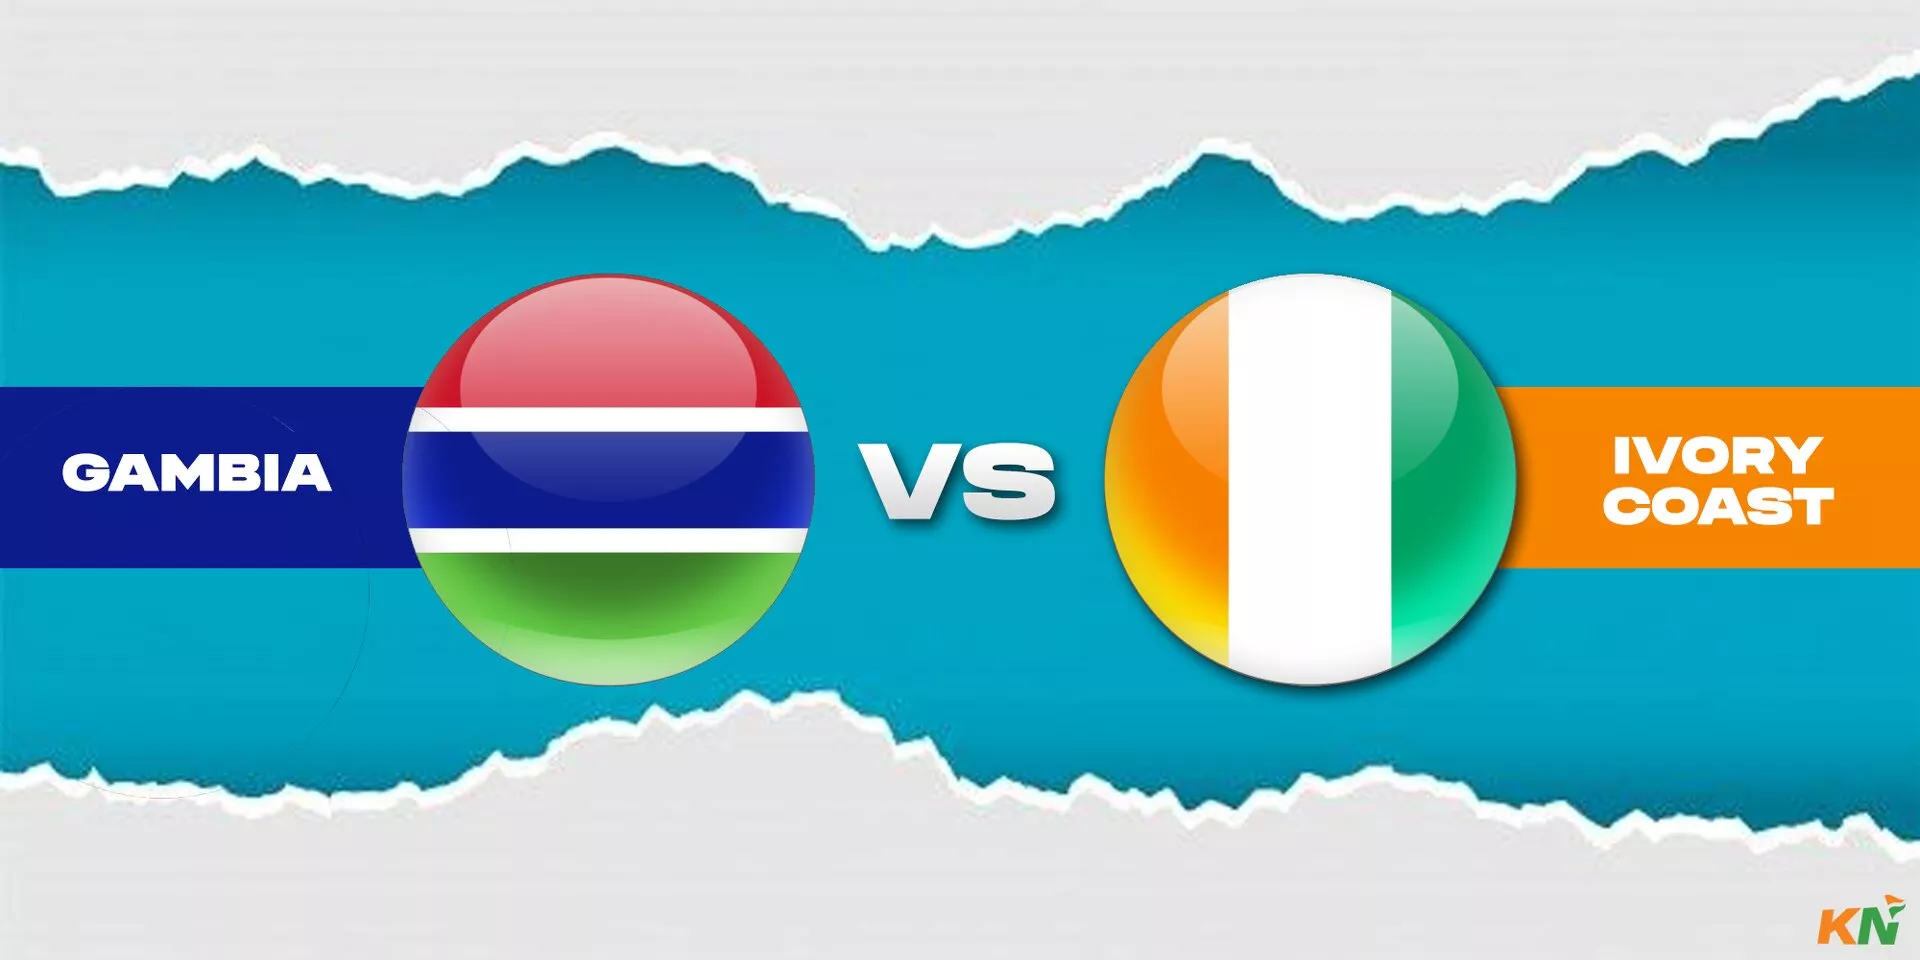 Gambia vs Ivory Coast